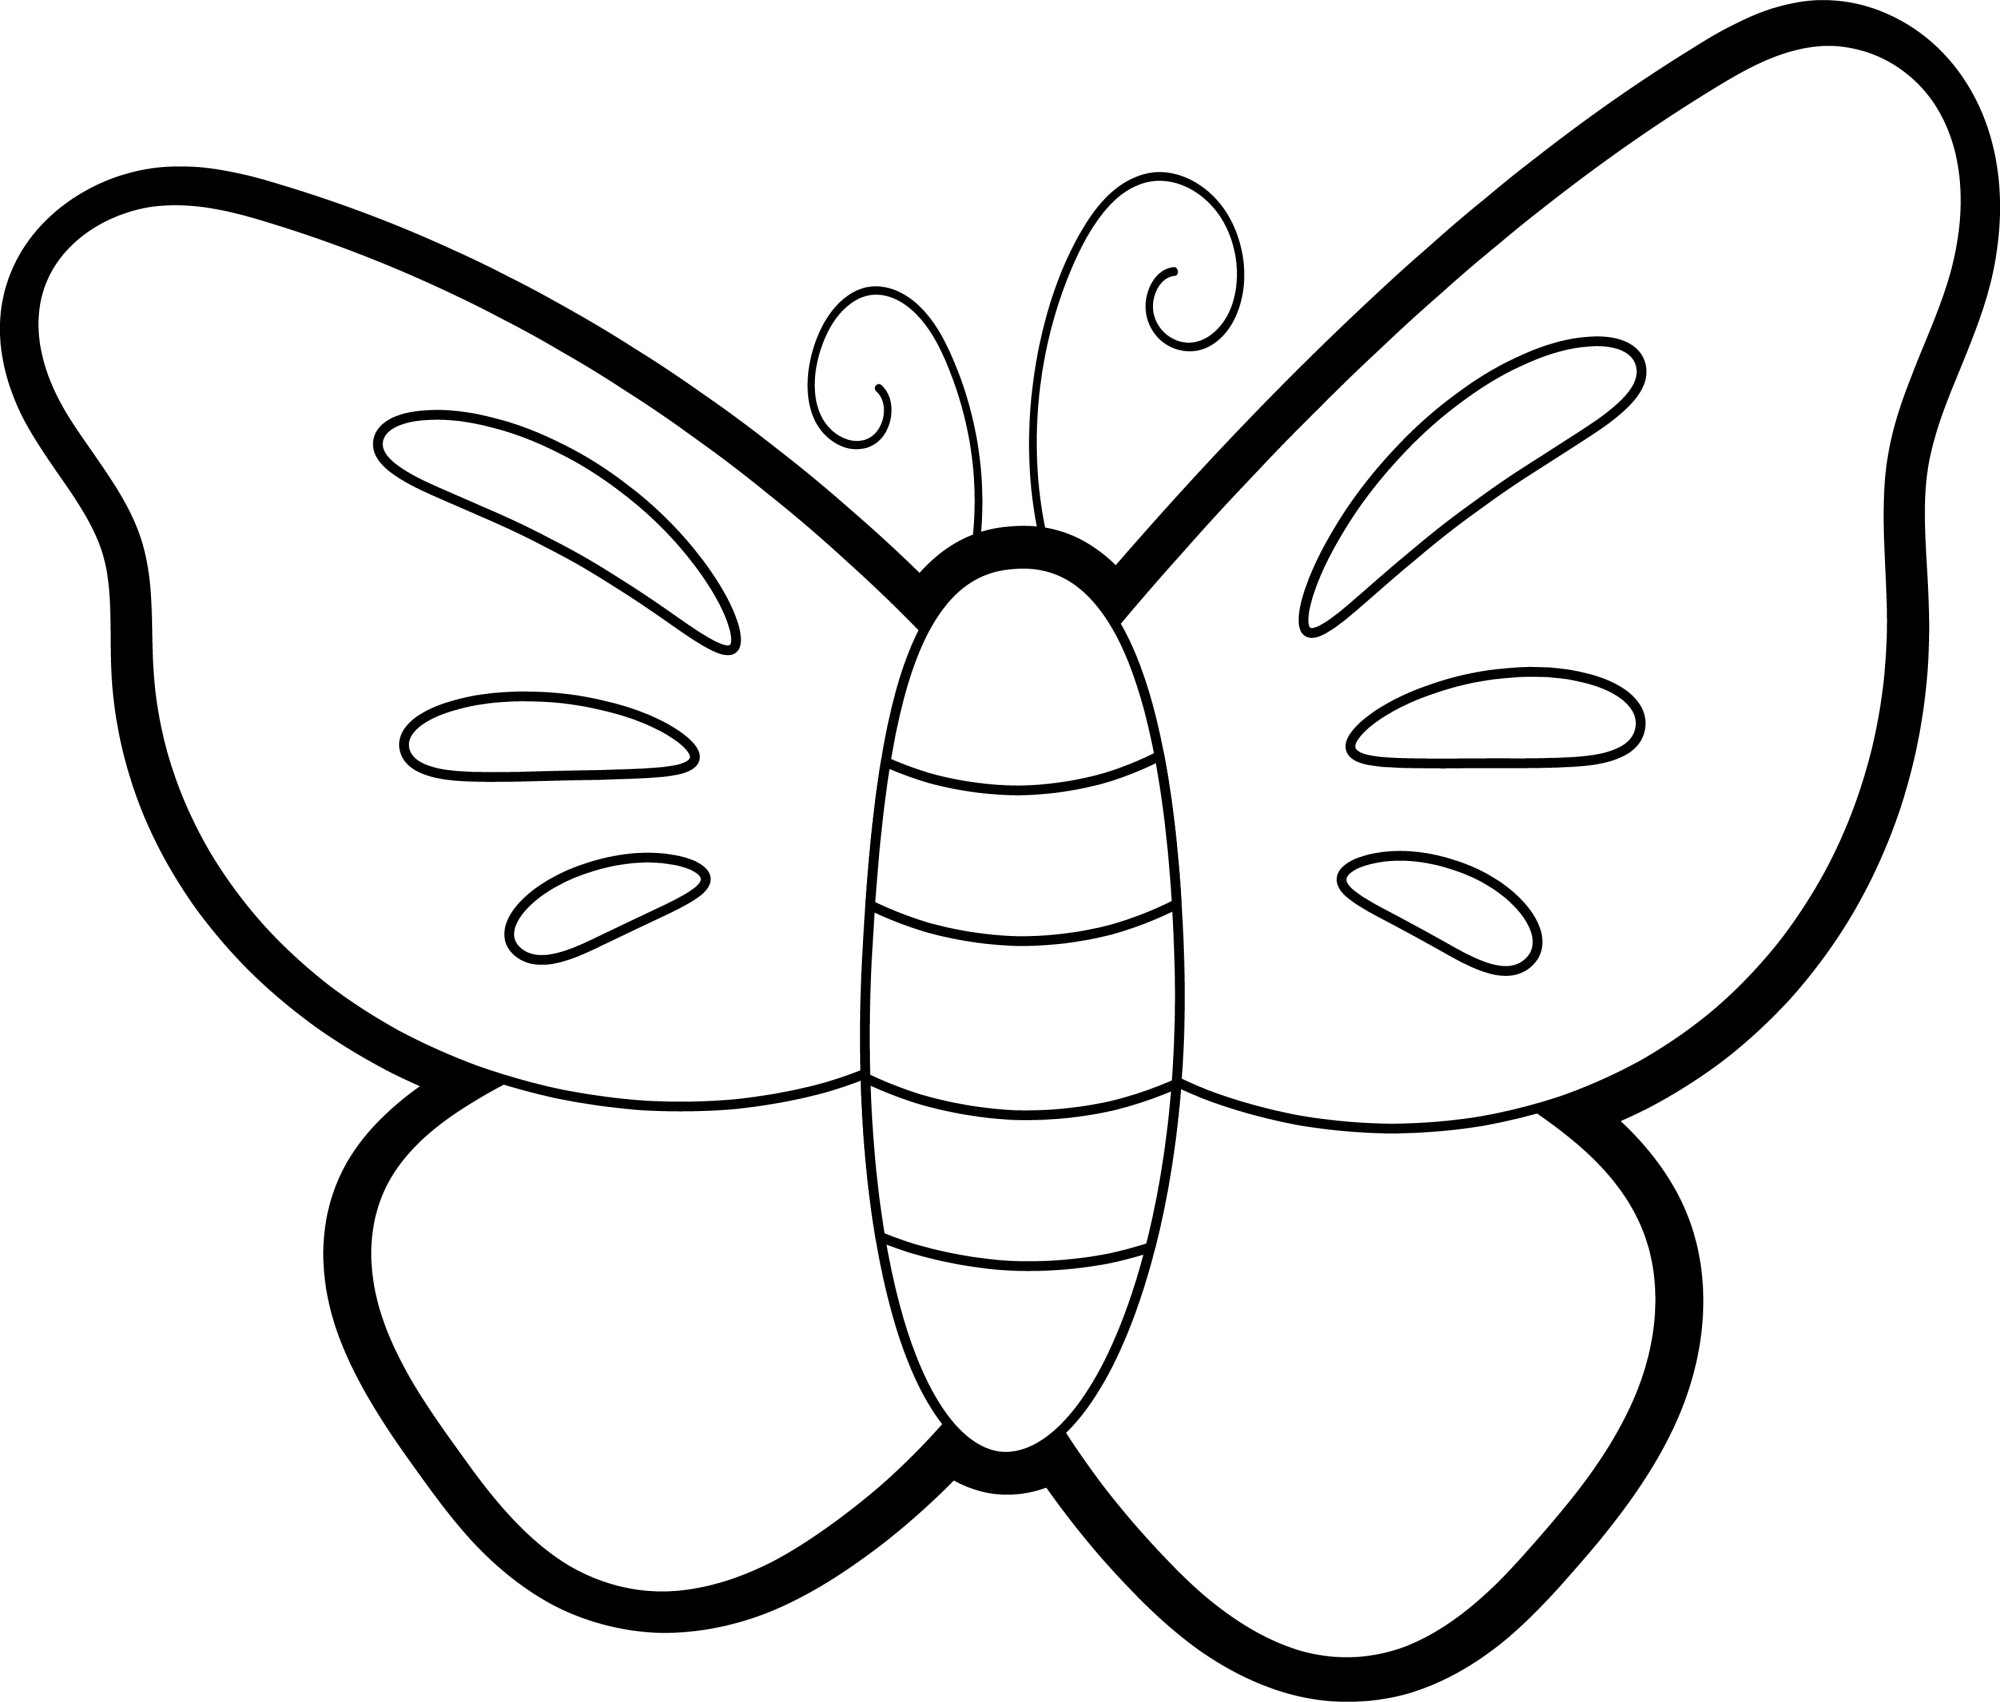 Раскраска для детей: игрушечная бабочка